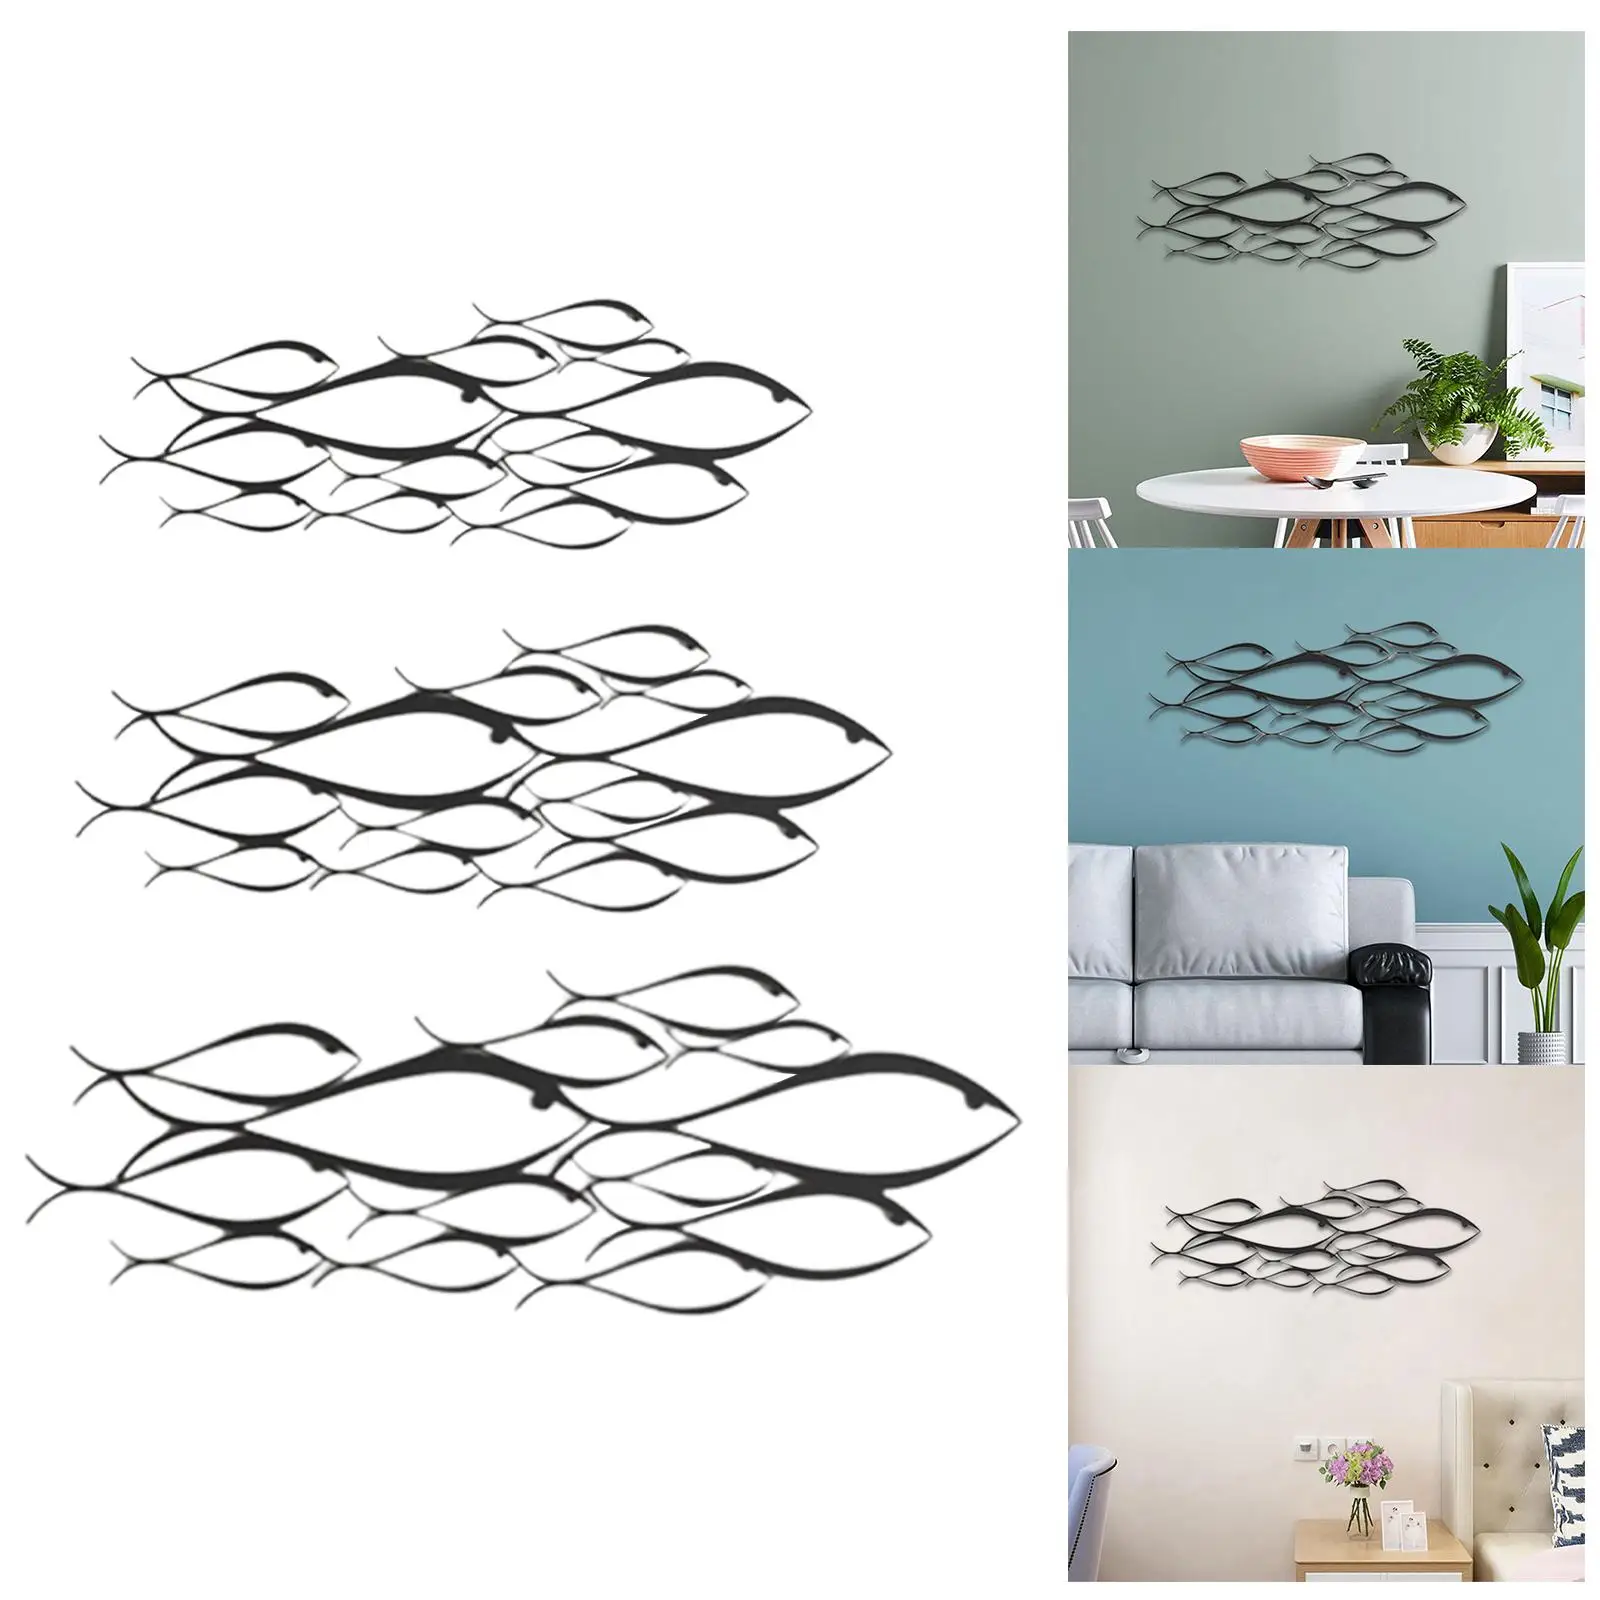 Metal Fish Wall Sculpture Art Decor Wall Decor, for Bedroom, Living Room,